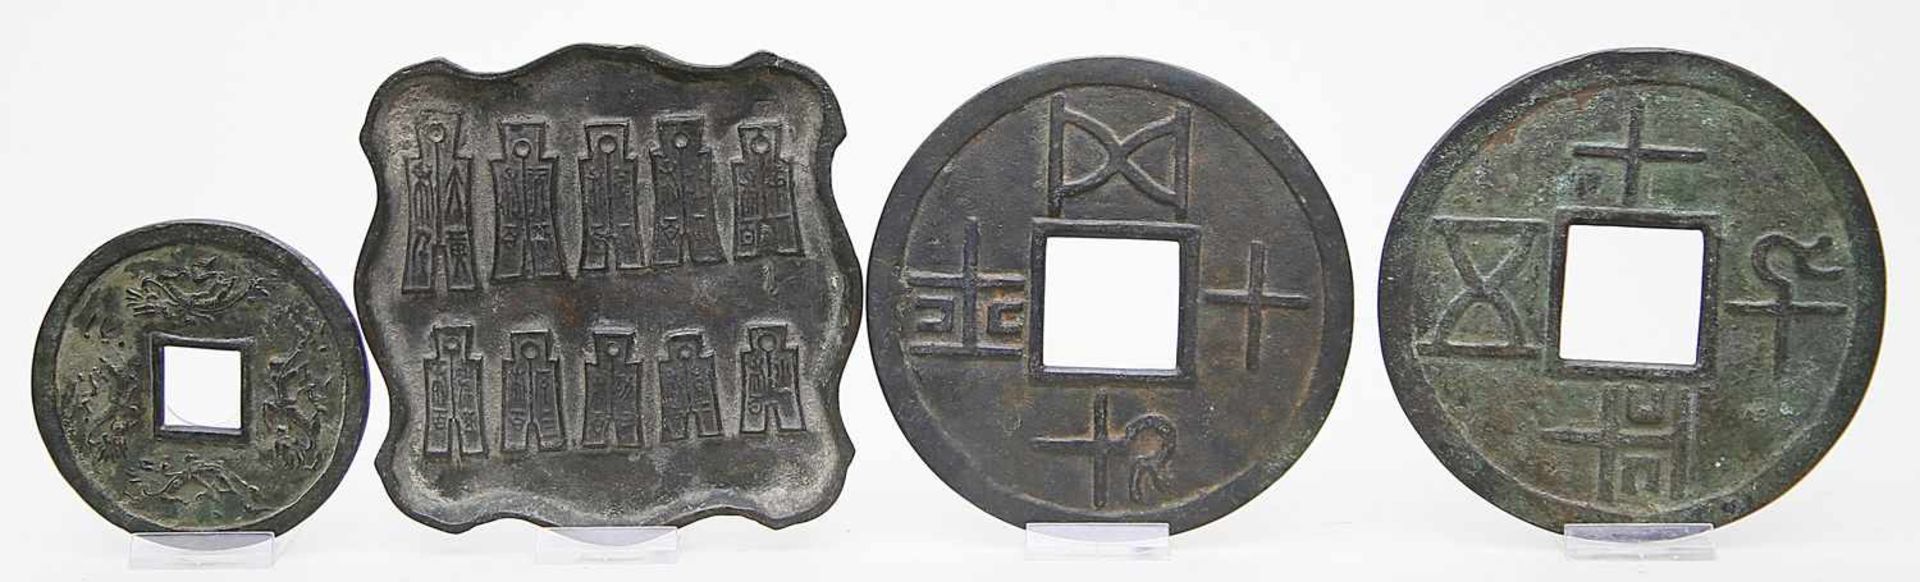 Ablage mit 10 messerartigen Münzen und drei große Münzen.Bronze mit Alterspatina und Reliefdekor.